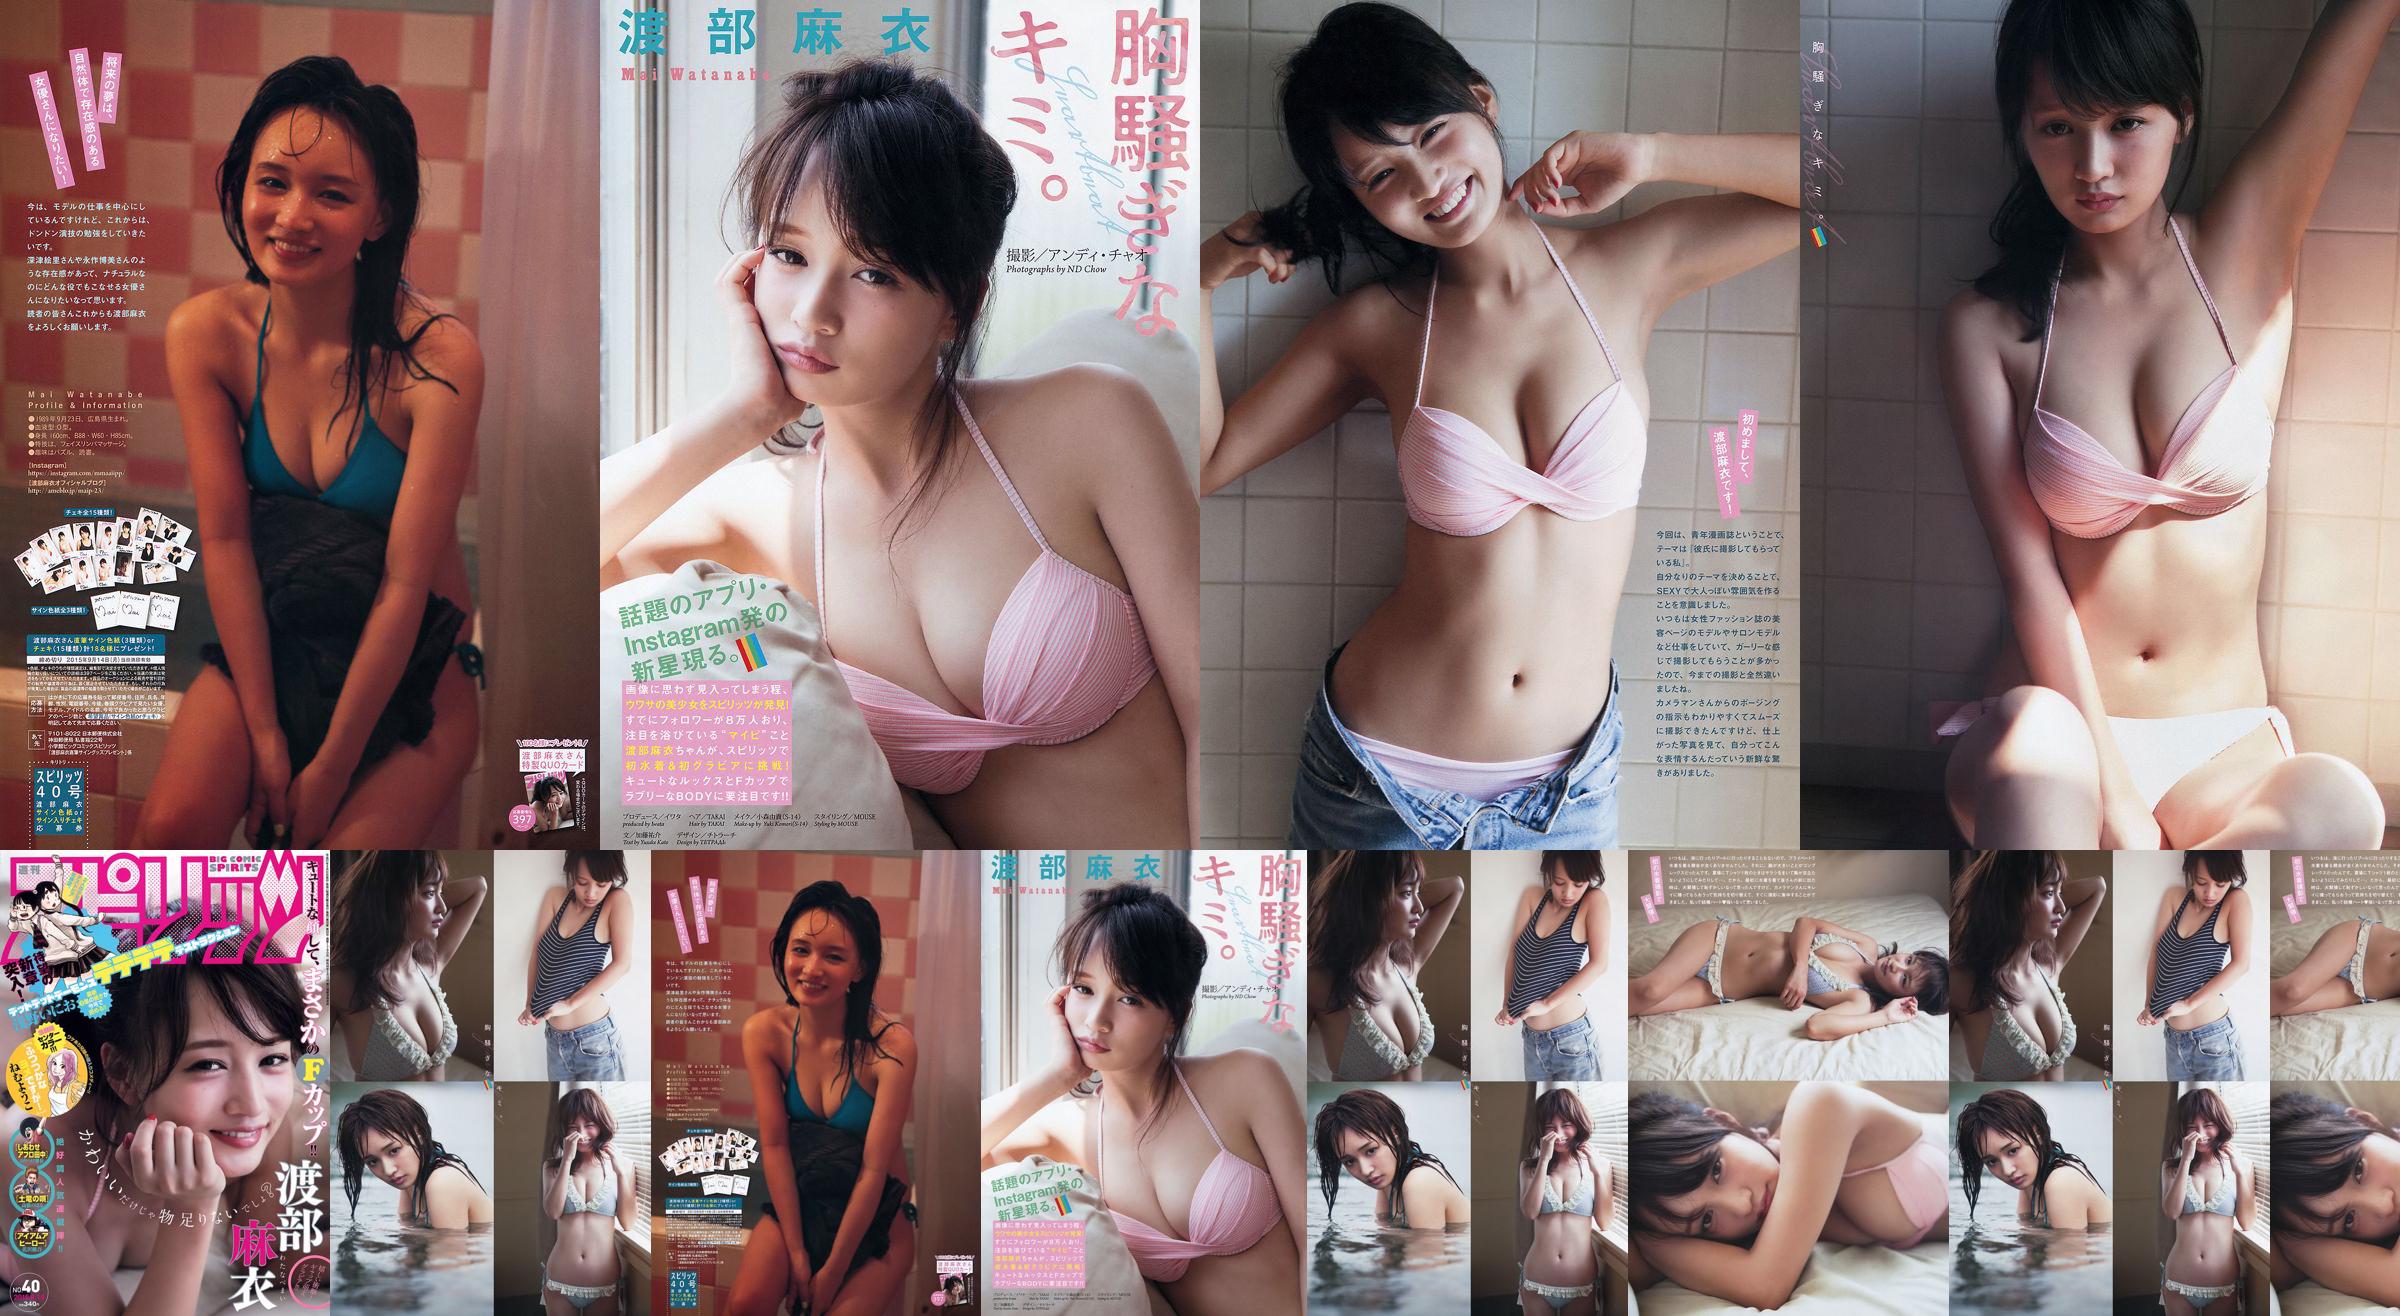 [Wekelijkse Big Comic Spirits] Watanabe Mai 2015 No.40 Photo Magazine No.86e71e Pagina 4